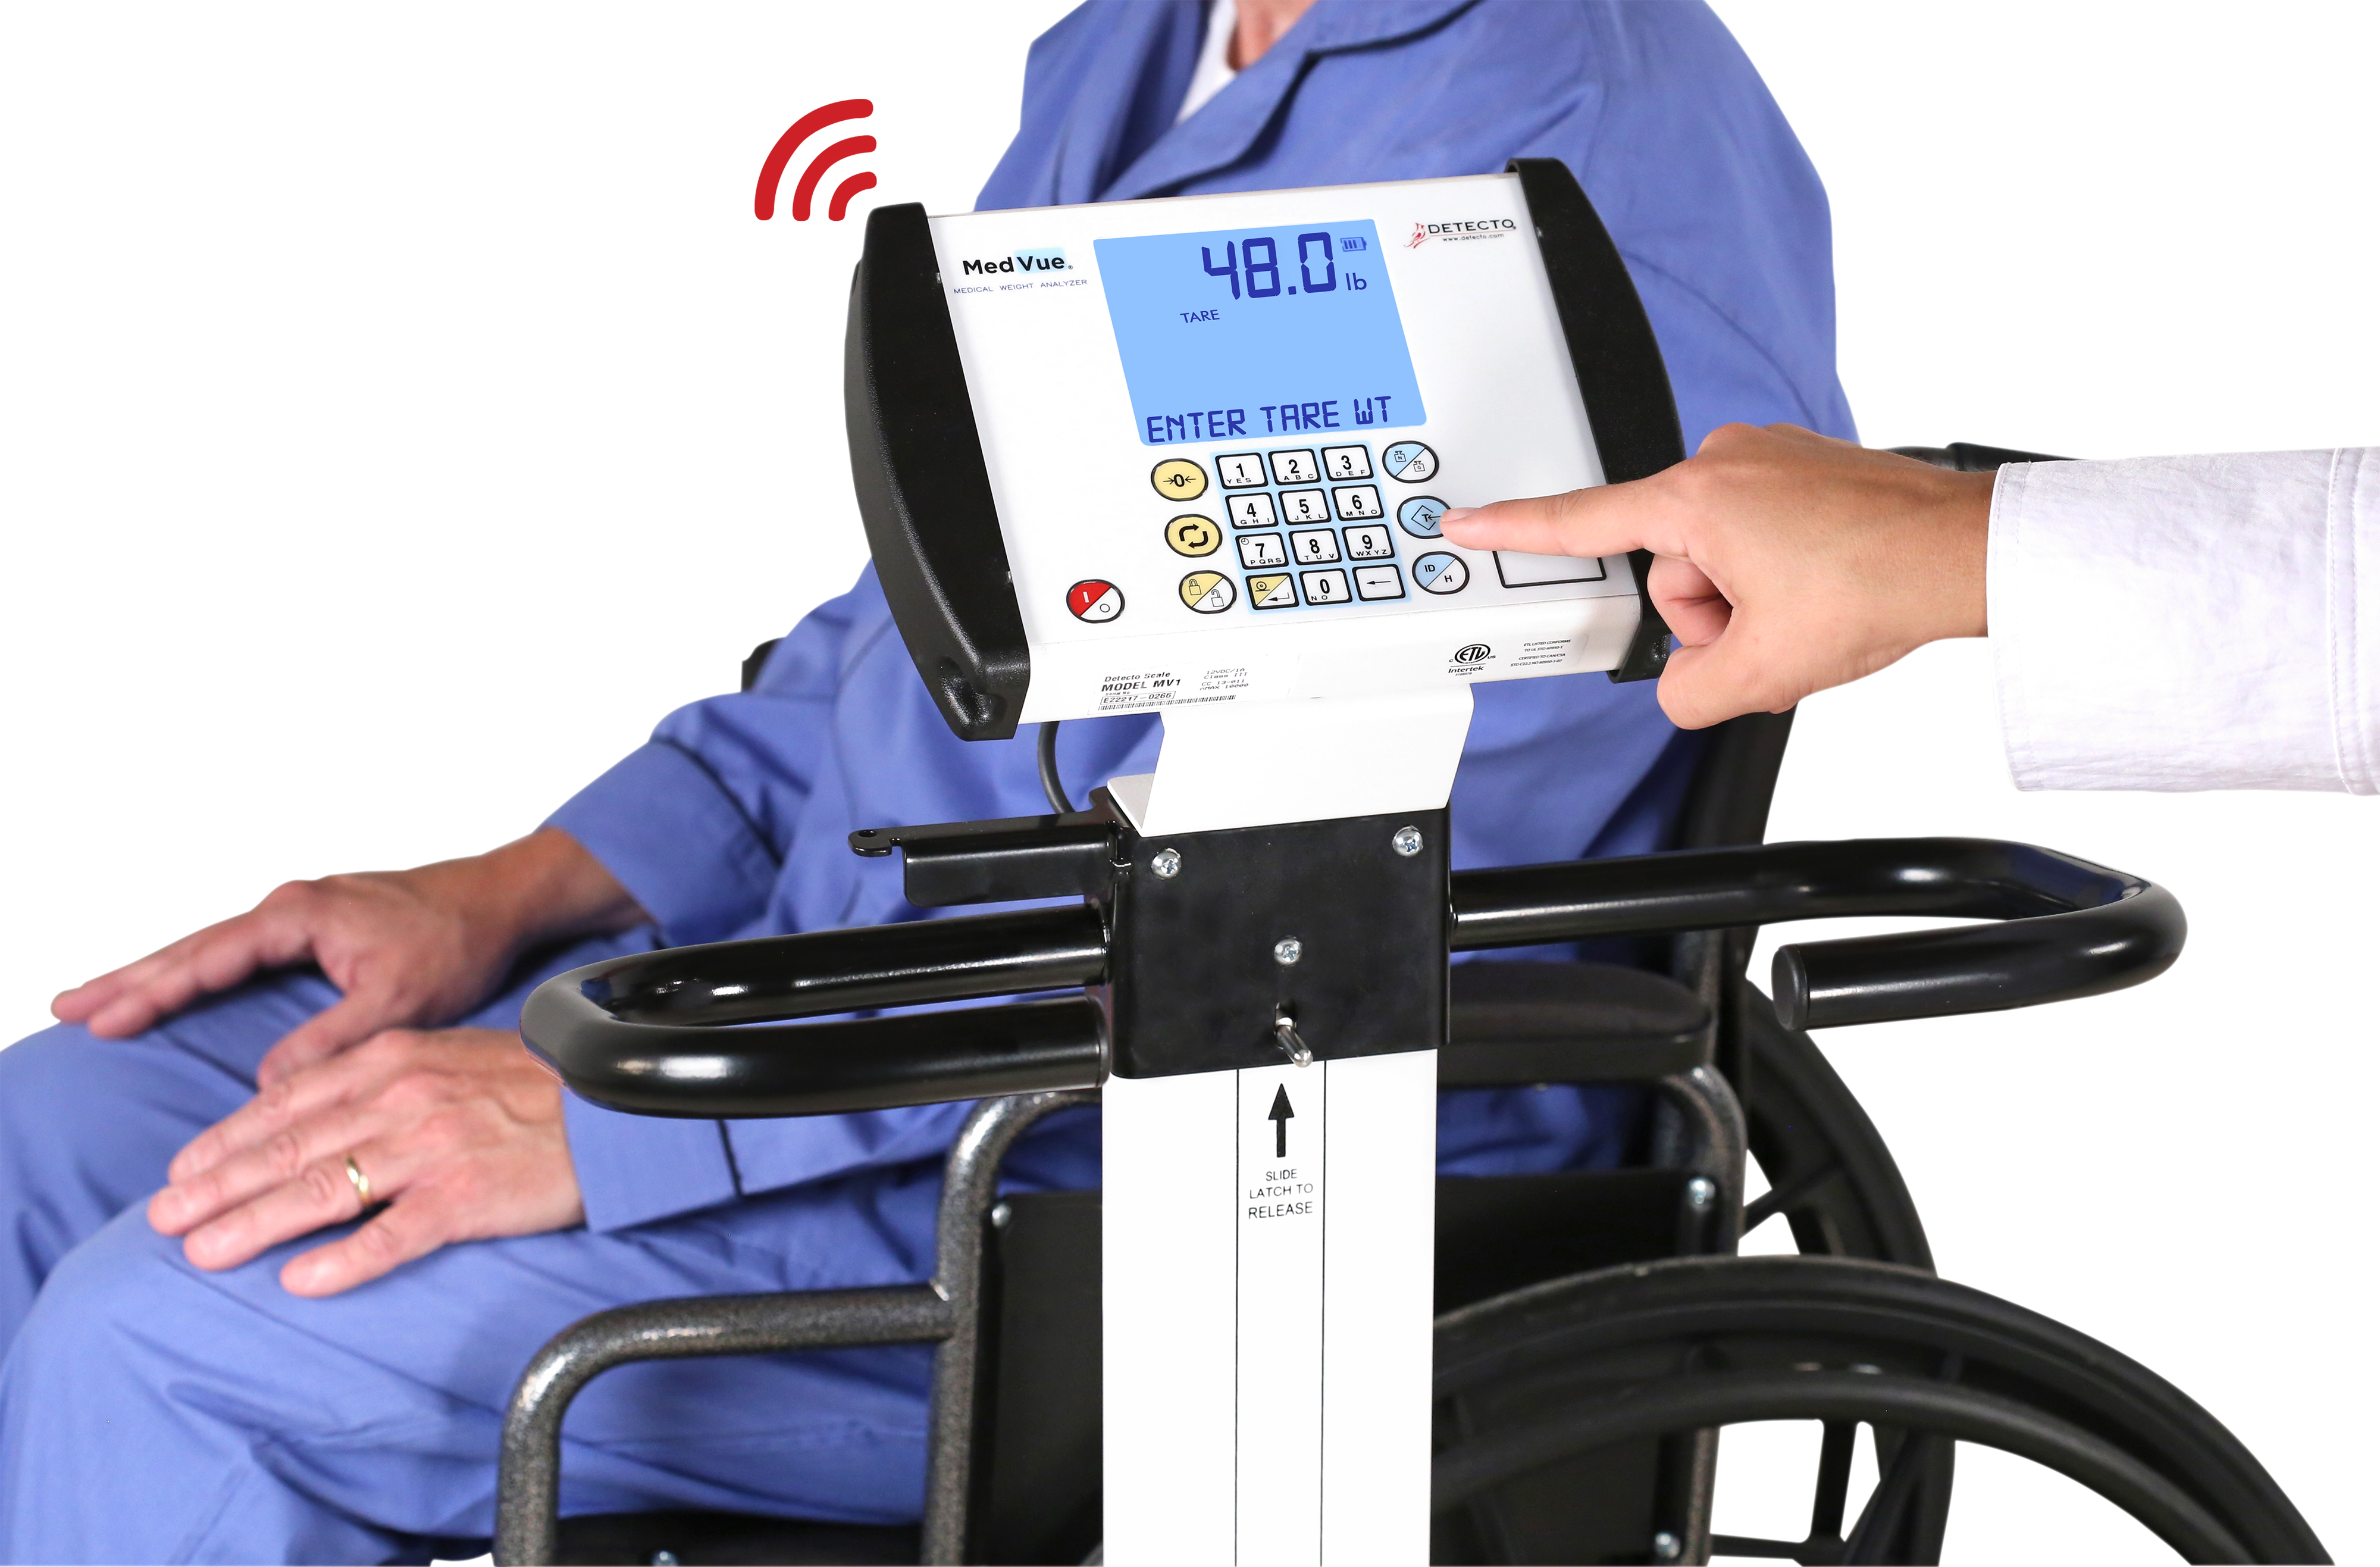 Detecto Portable Folding Wheelchair Scale